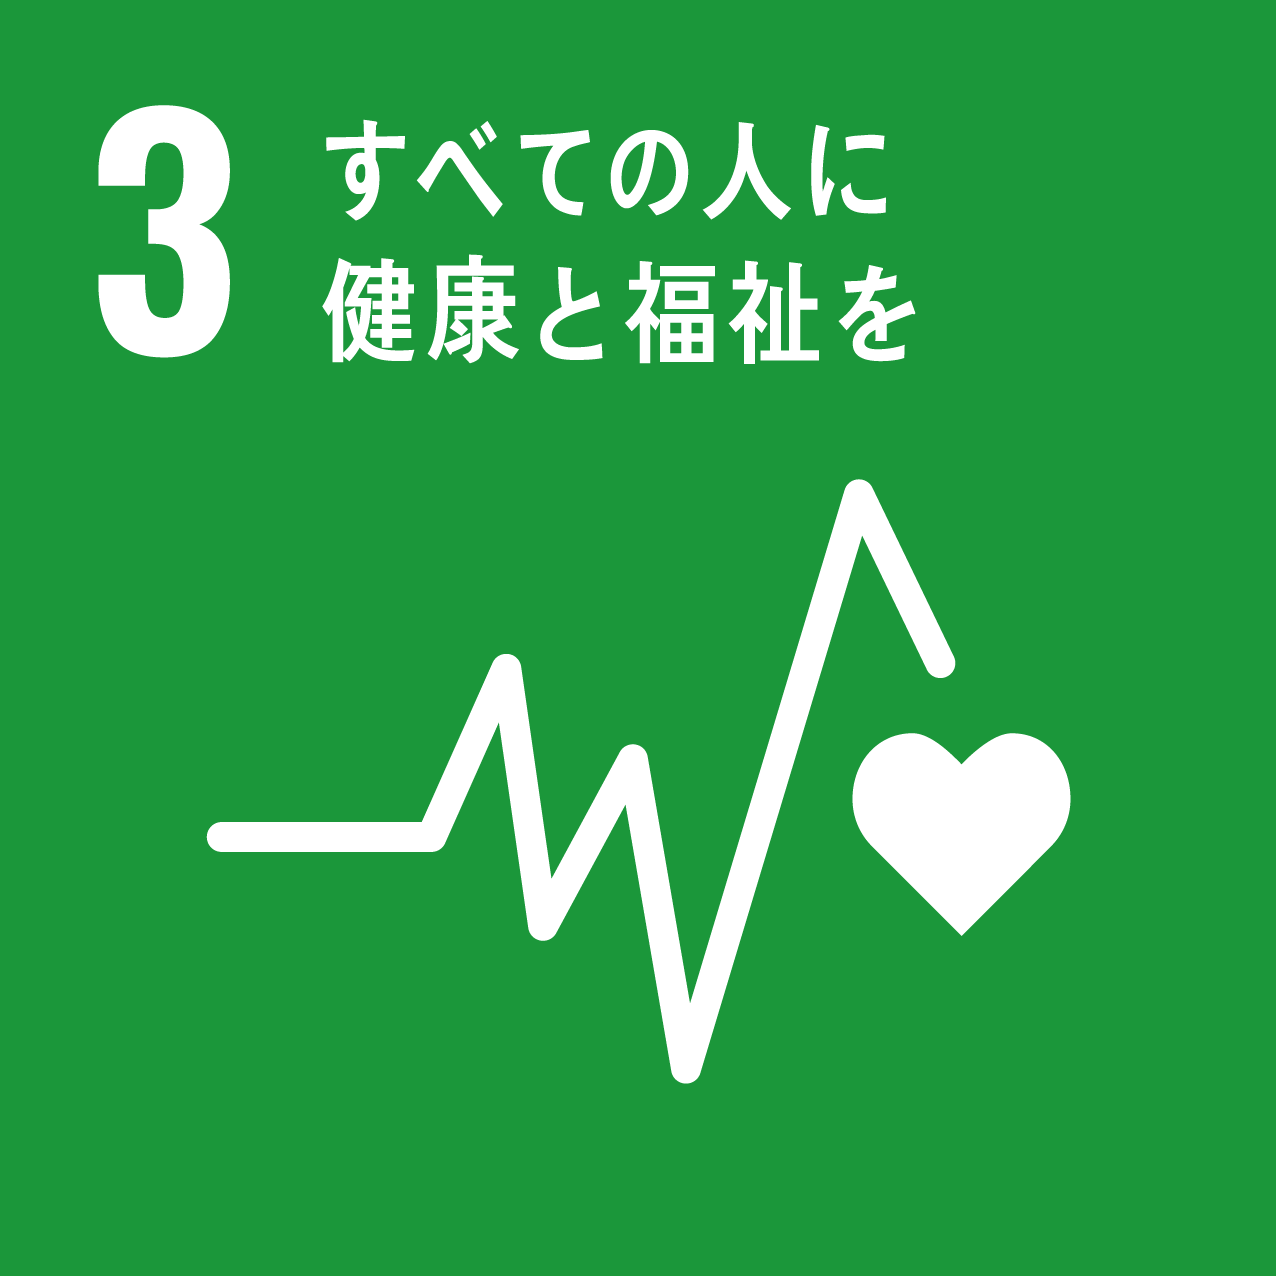 SDGs_目標3「すべての人に健康と福祉を」アイコン